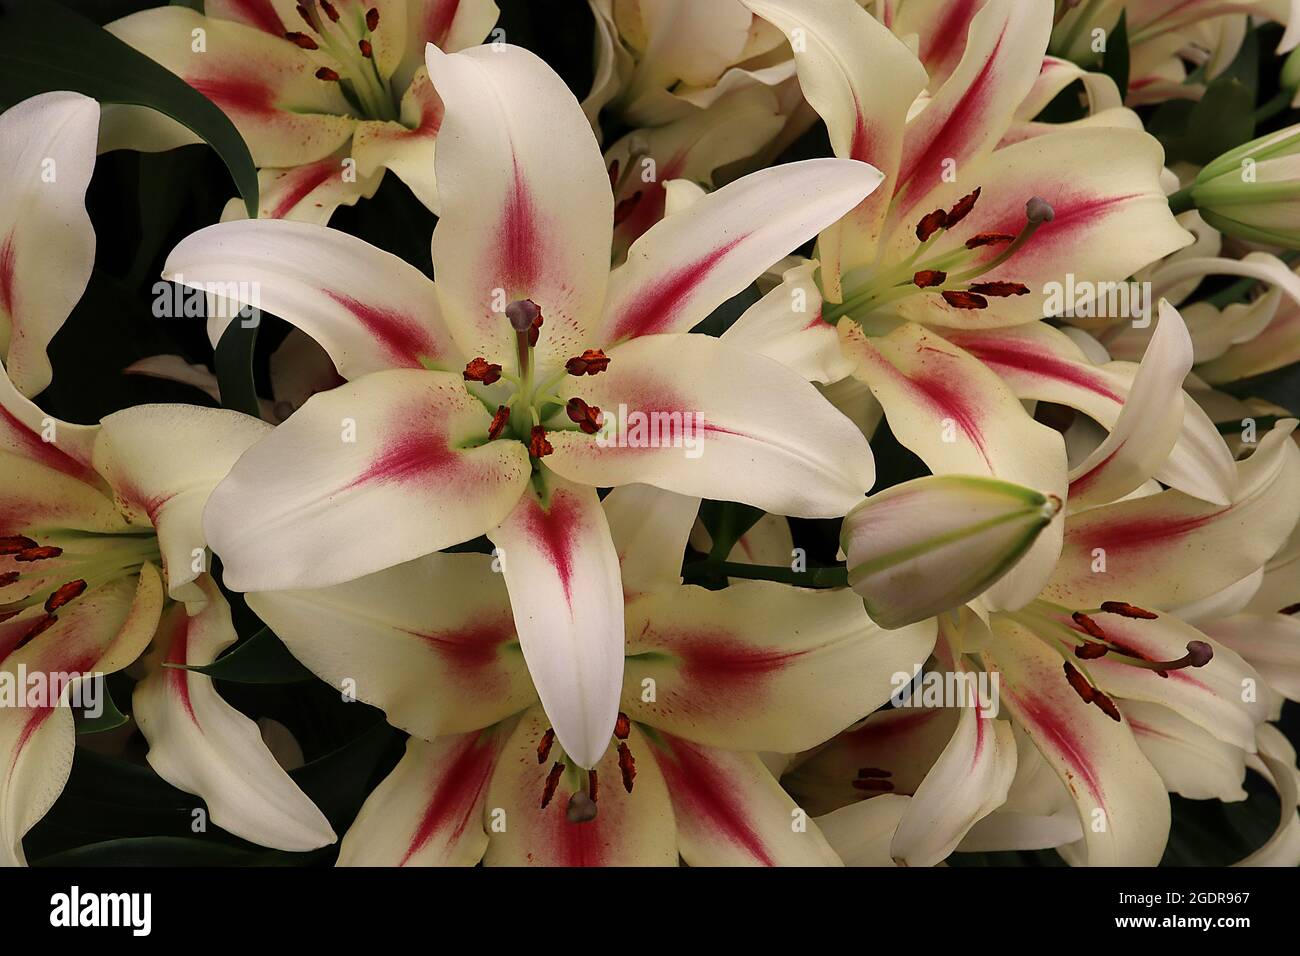 Lilium ‘Nymph’ Oriental Lilium Nymph – fiori bianchi profumati con marcature color cremisi e macchie di cremisi sparse, luglio, Inghilterra, Regno Unito Foto Stock